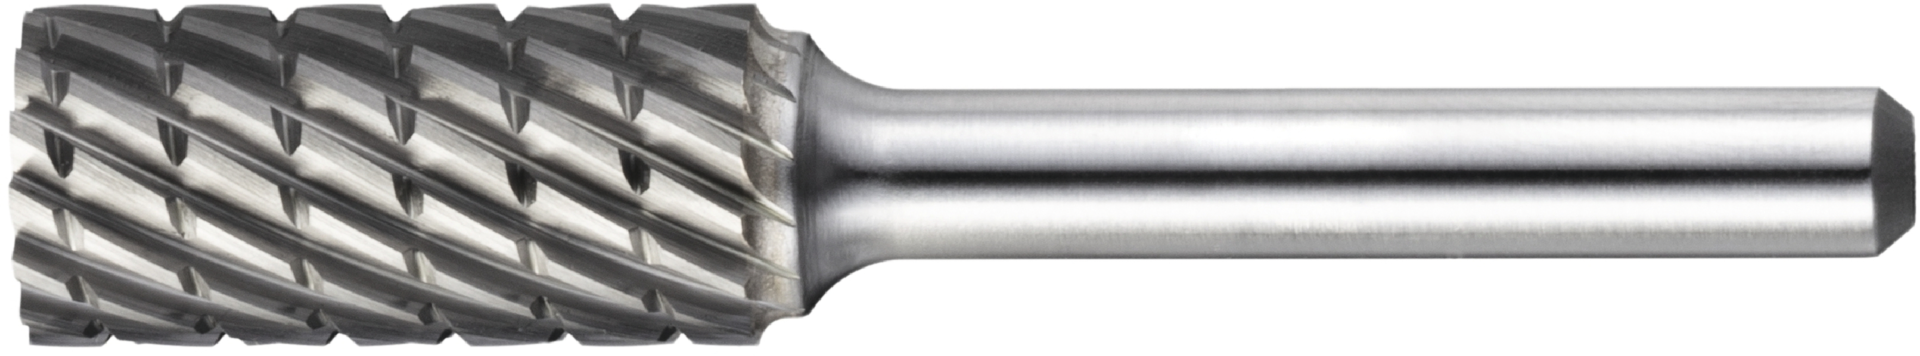 Frässtift HM Inox/Steel-Verzahnung Schaft 6mm Zylinderform ZYA D6mm L16mm